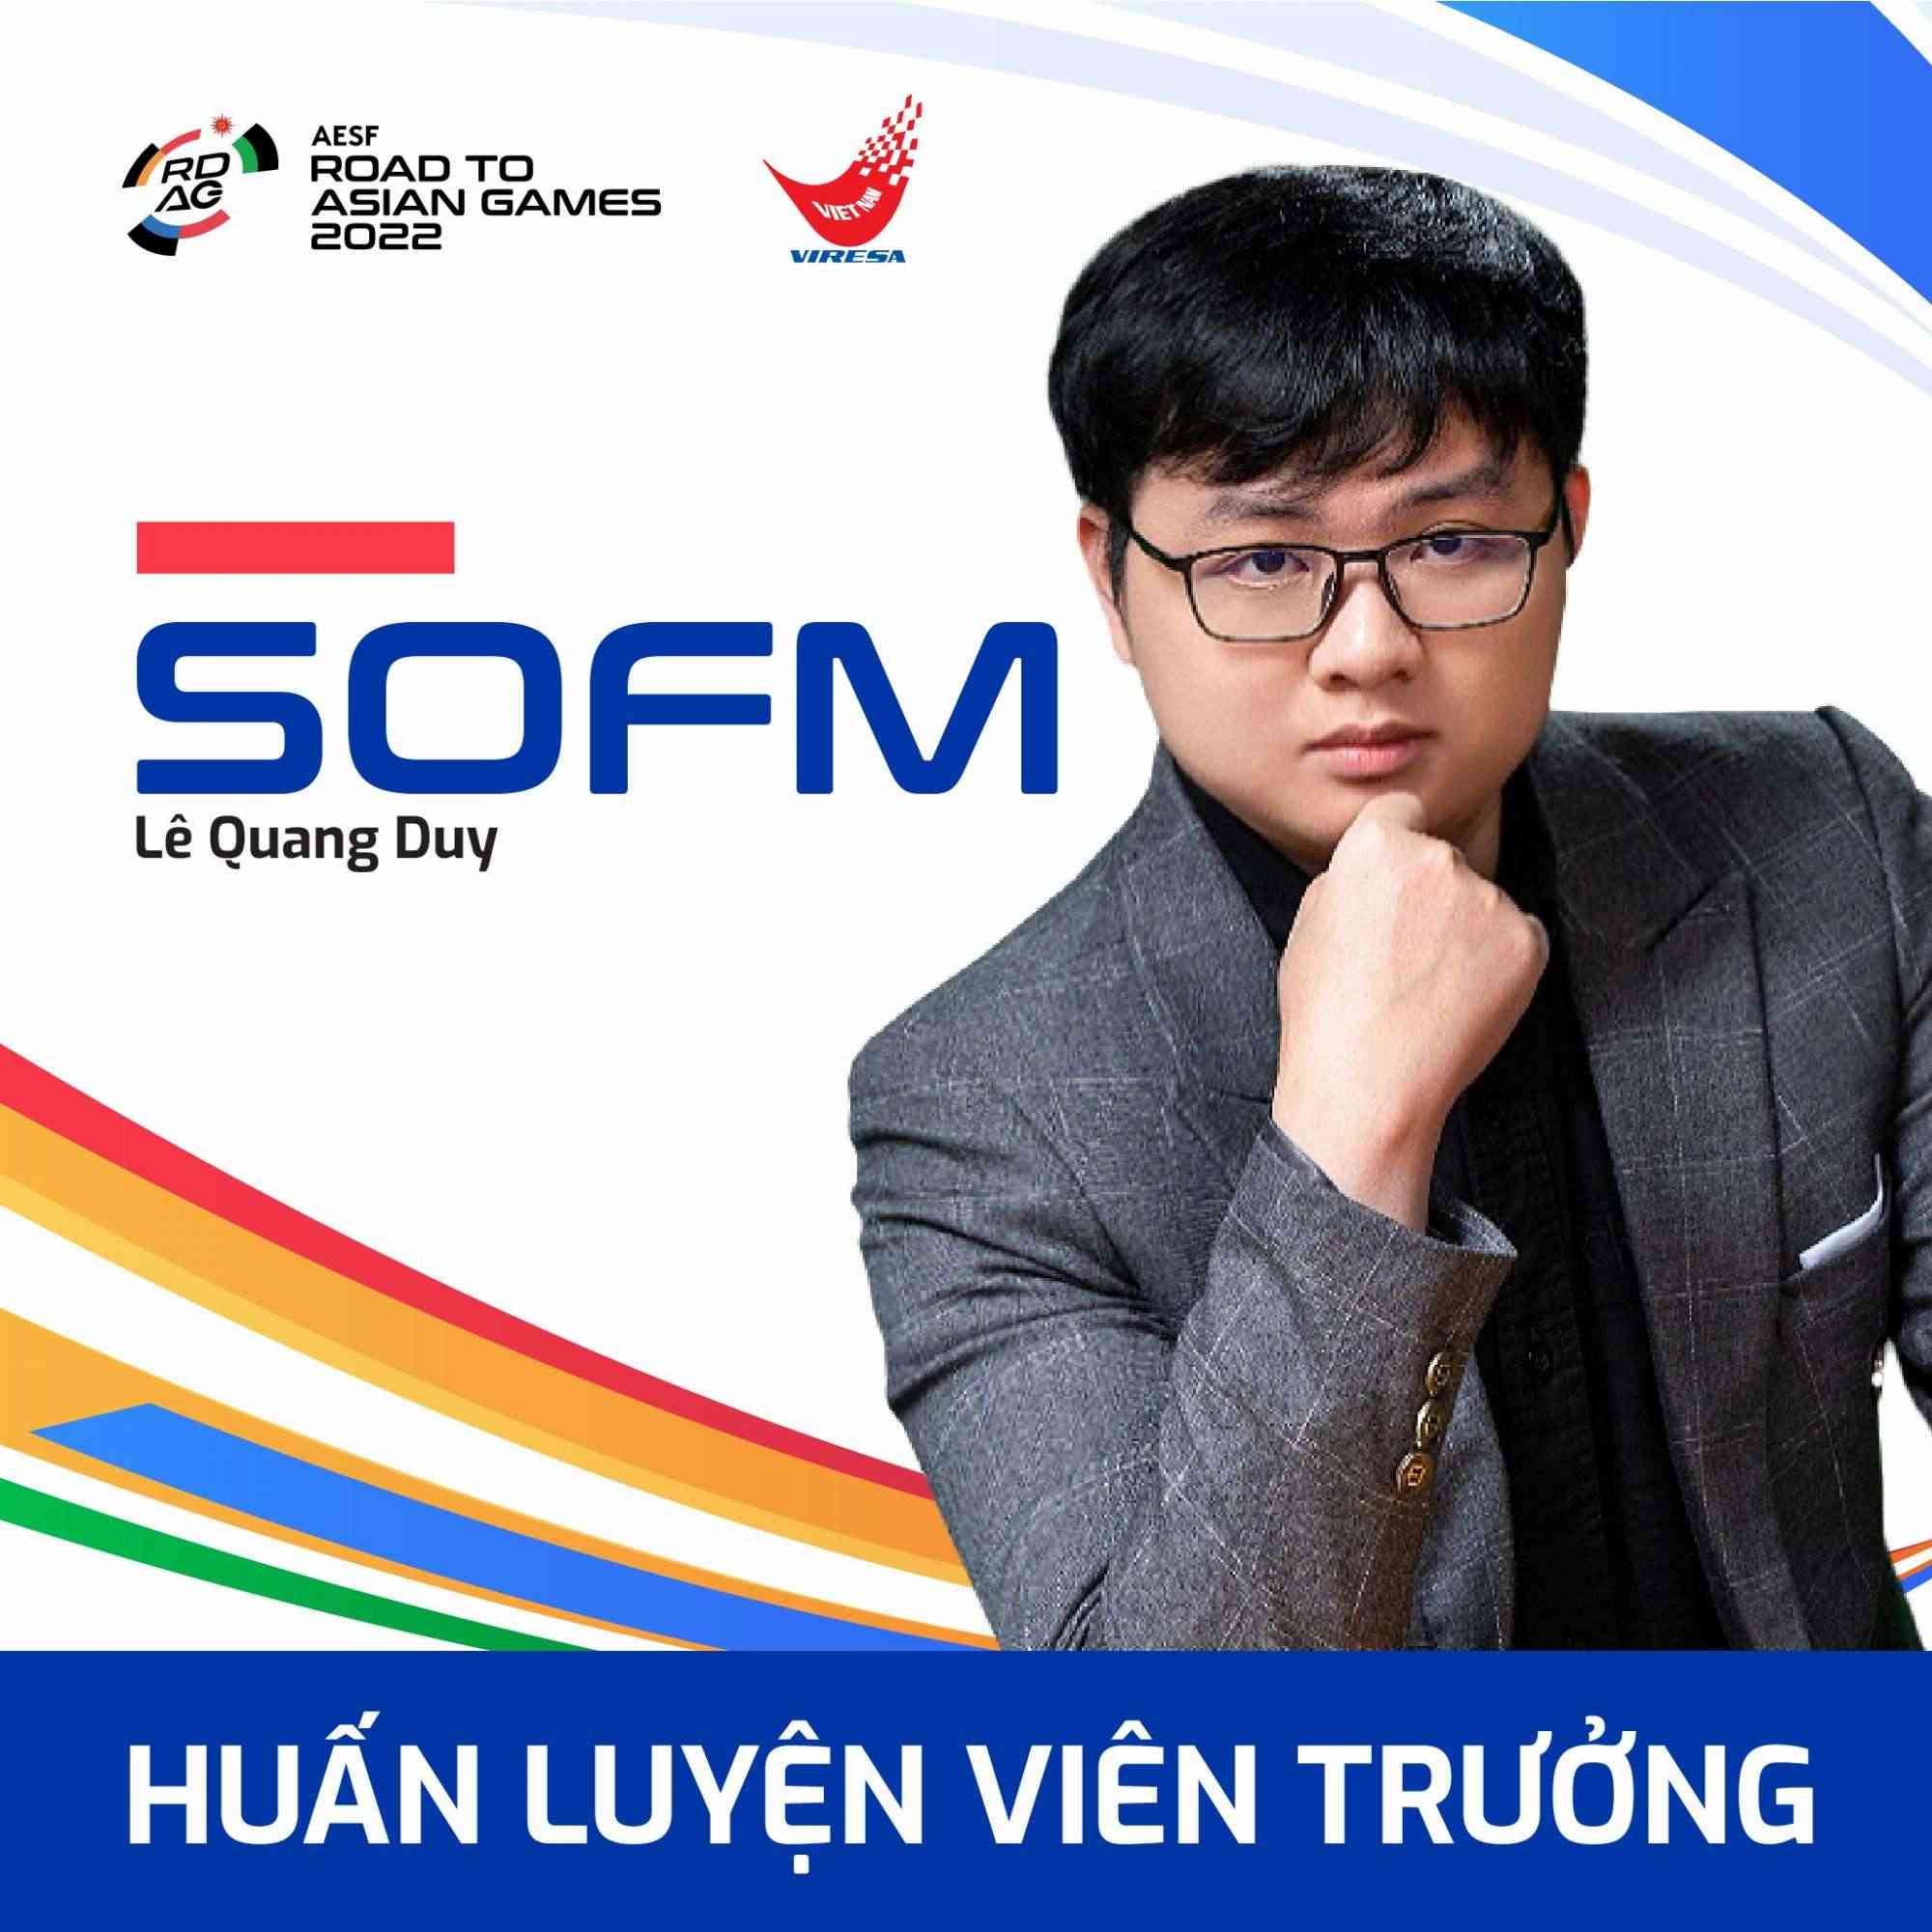 SofM sẽ là huấn luyện viên trưởng của ĐTQG LMHT Việt Nam tại Asian Games 2022.